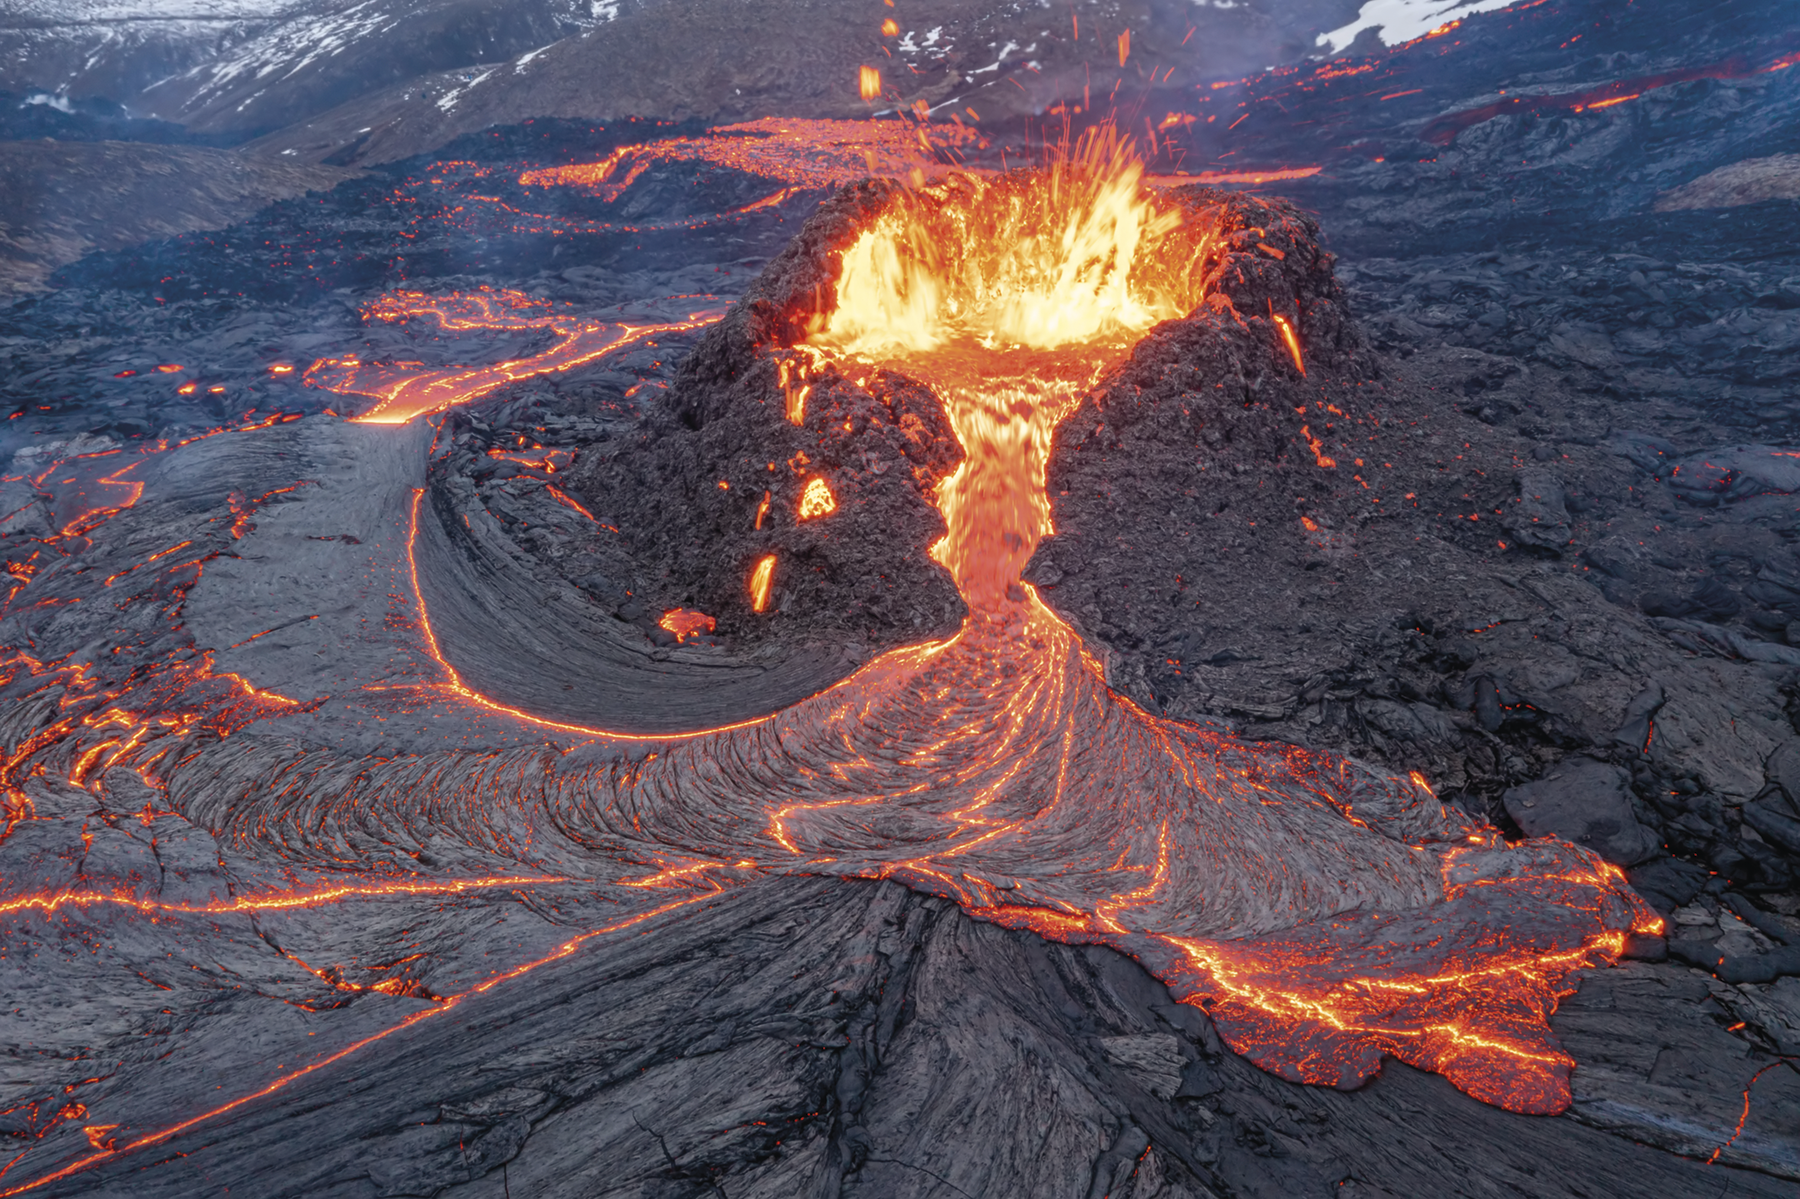 Fotografia. Um vulcão em erupção. Há lava escorrendo e espirrando de sua borda e espalhadas ao redor.